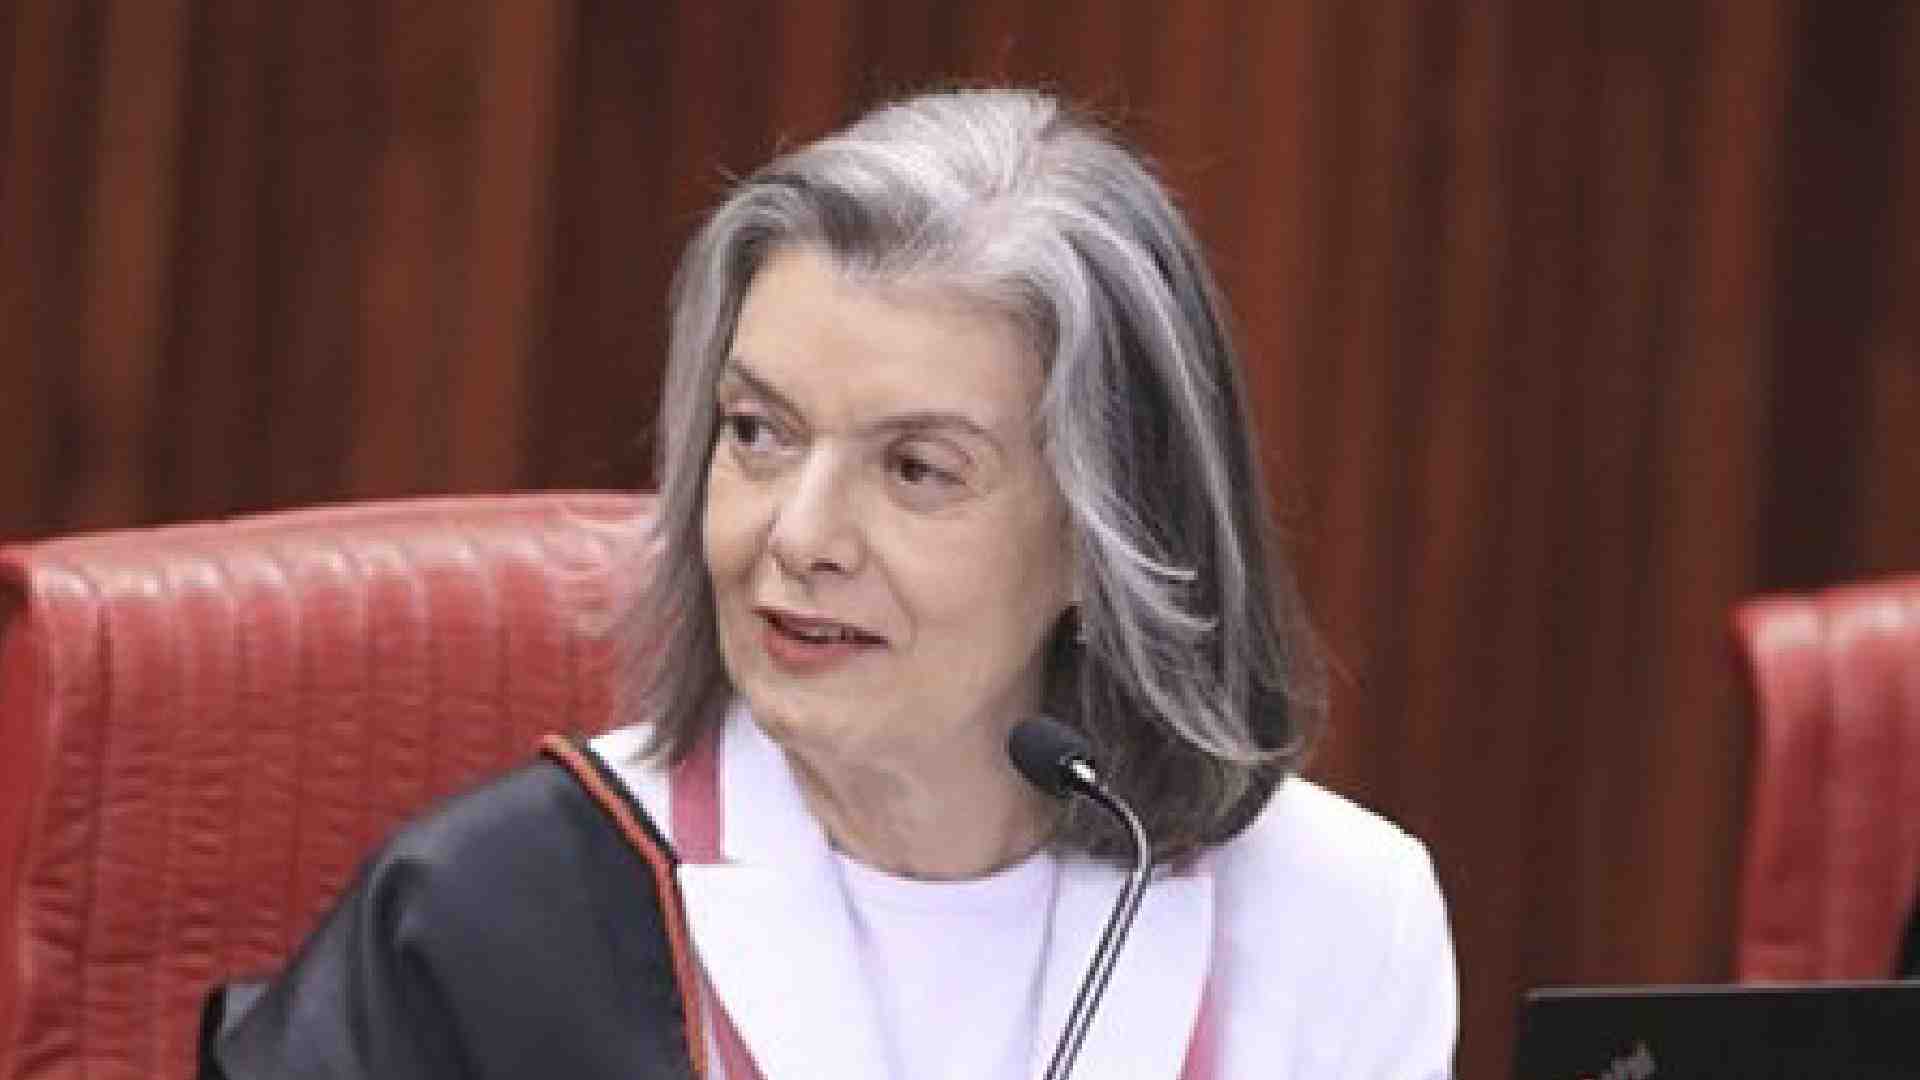 Ministra Carmén Lúcia toma posse como presidente do TSE na próxima semana